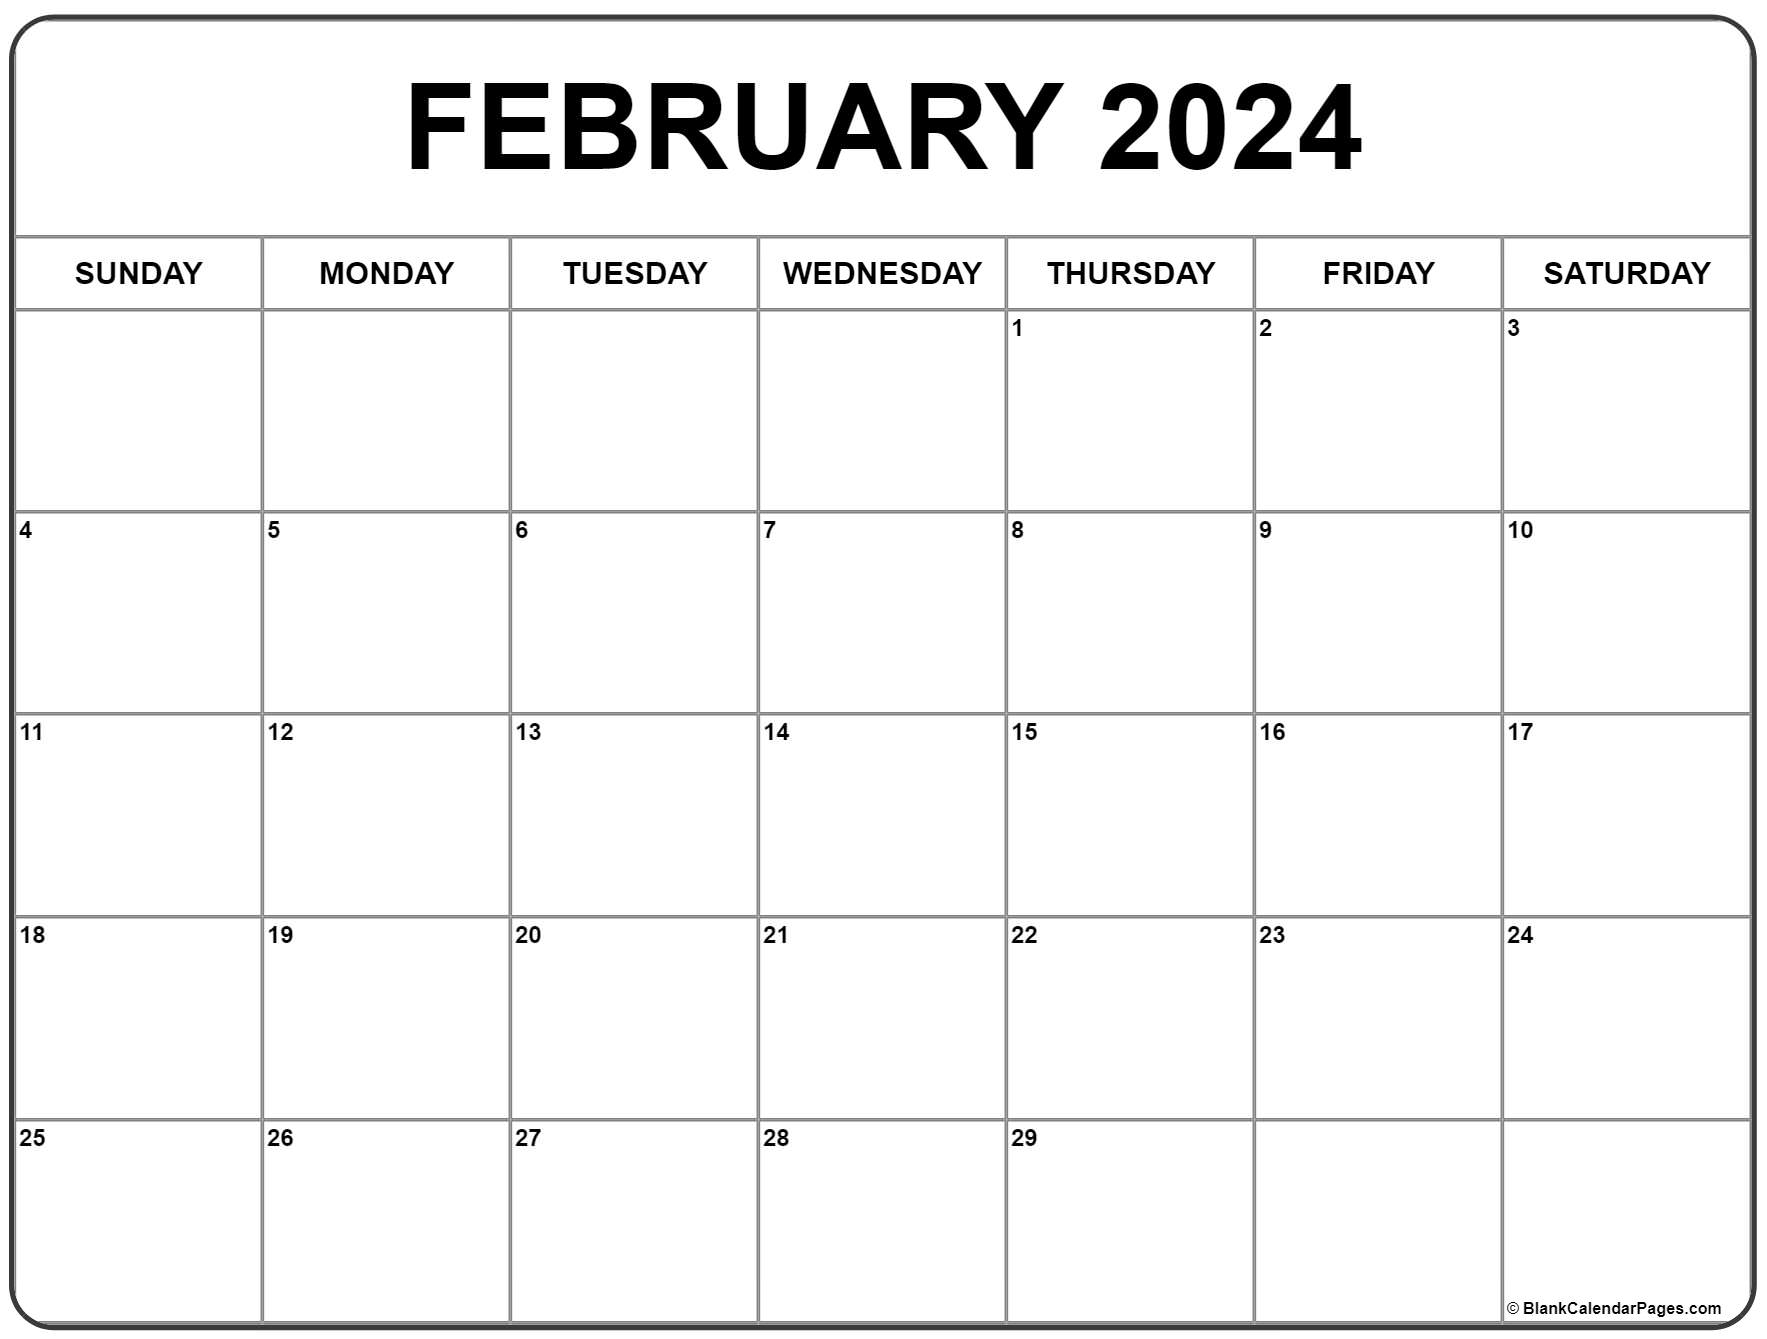 February 2024 Calendar | Free Printable Calendar for February Calendar 2024 Free Printable